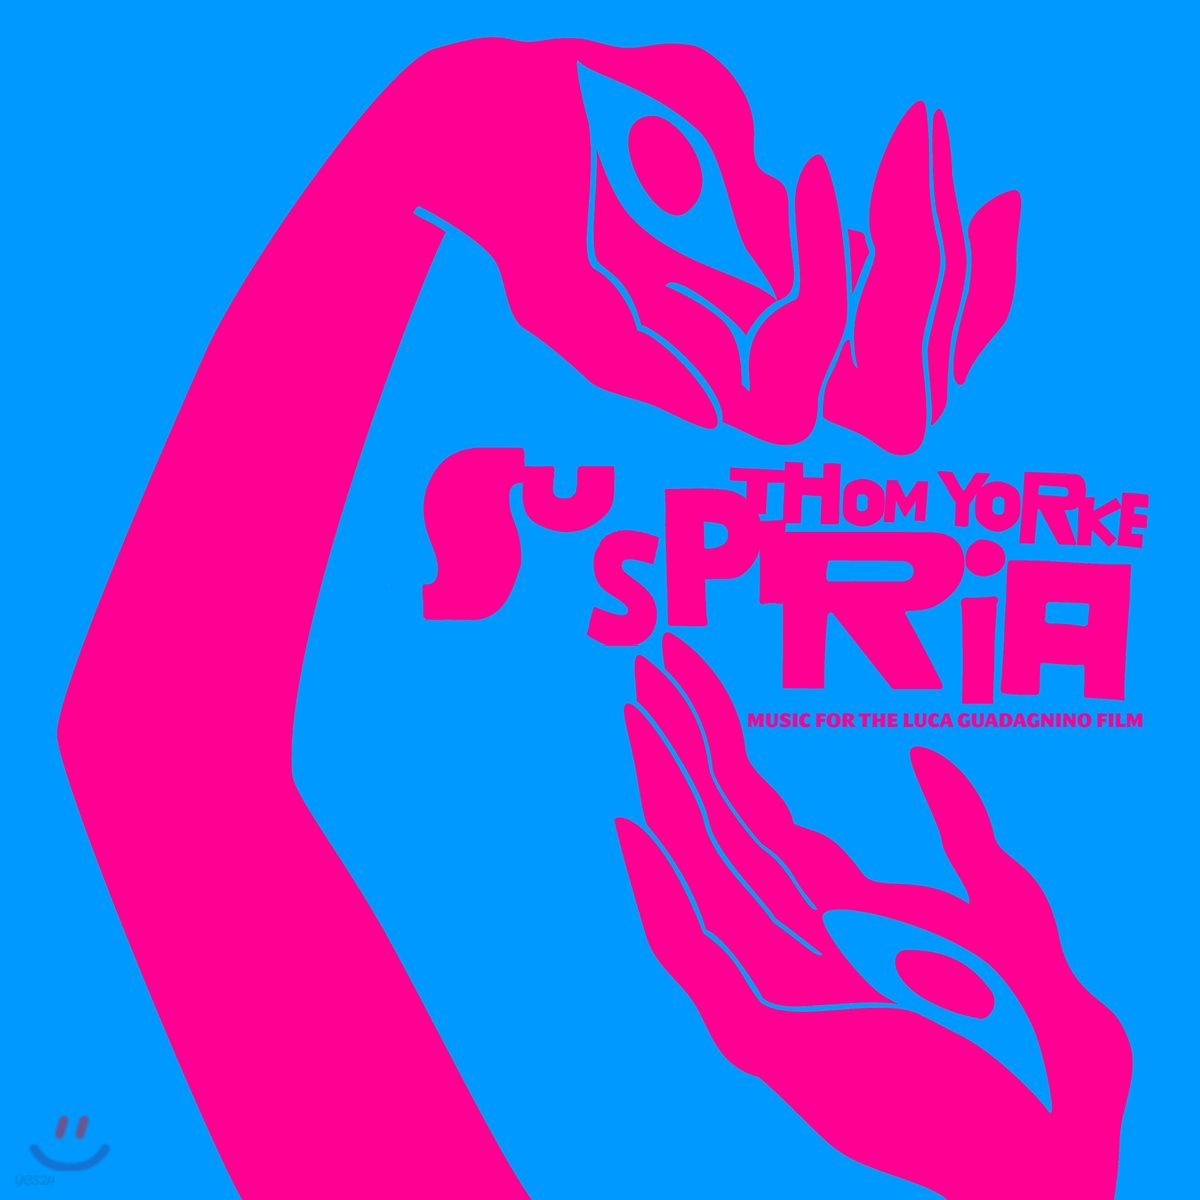 서스페리아 영화음악 (Suspiria OST by Thom Yorke) 